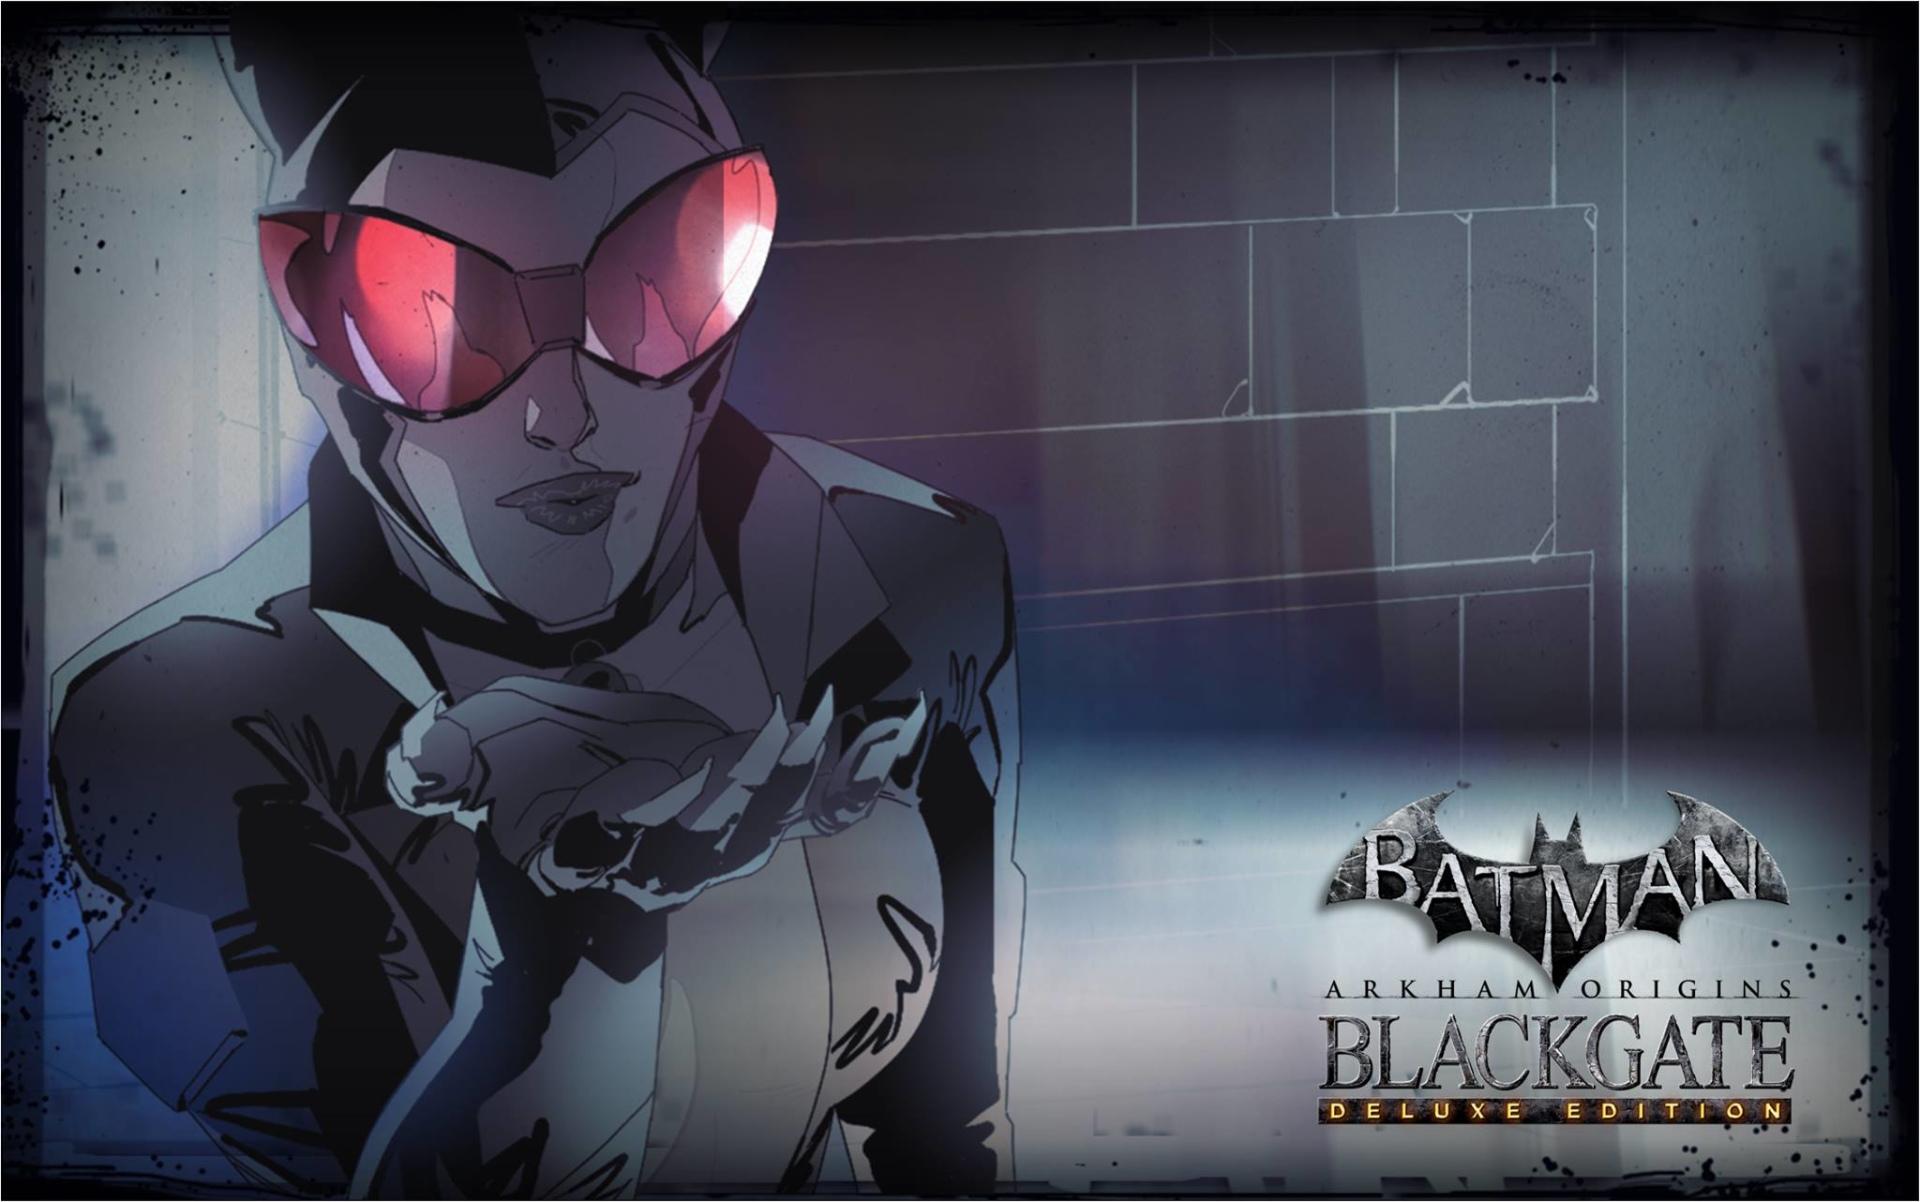 Batman Arkham Origins Blackgate at 1024 x 1024 iPad size wallpapers HD quality